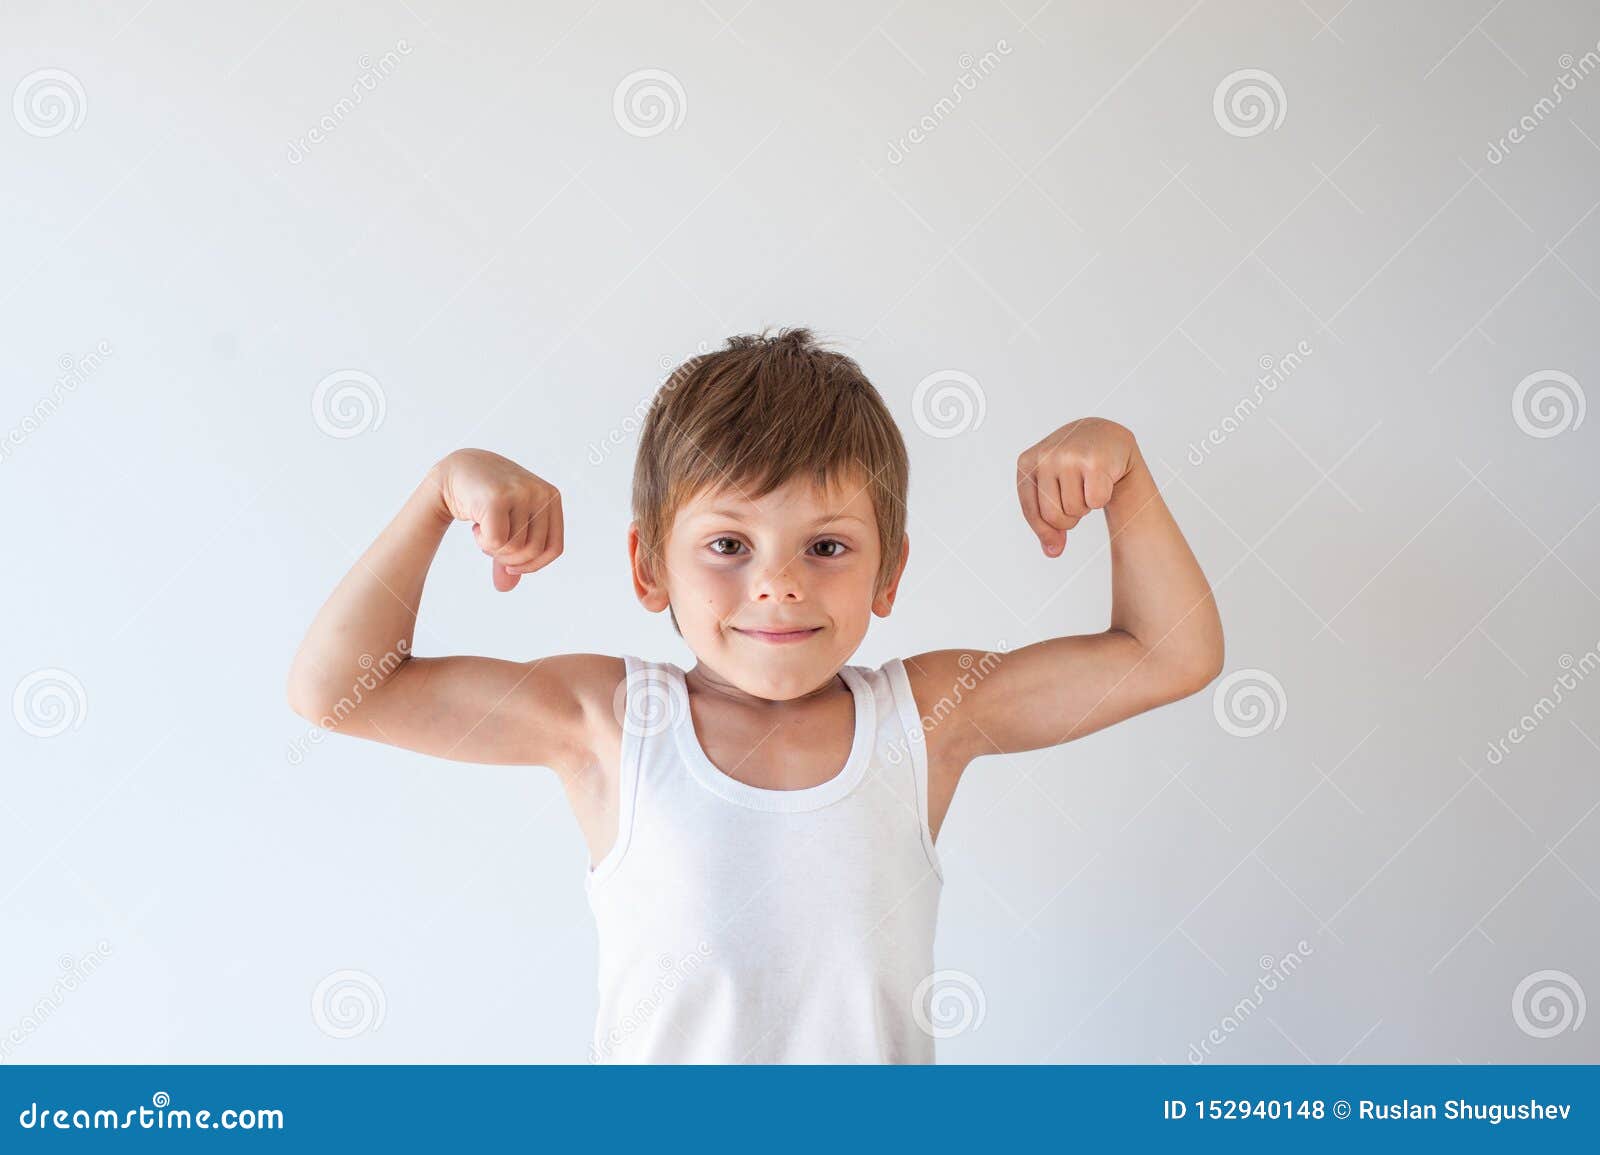 Сильные мальчики в классе. Мальчик здоровый и сильный. Сильный мальчик. Сильный и здоровый ребенок. Здоровый и сильный малыш.